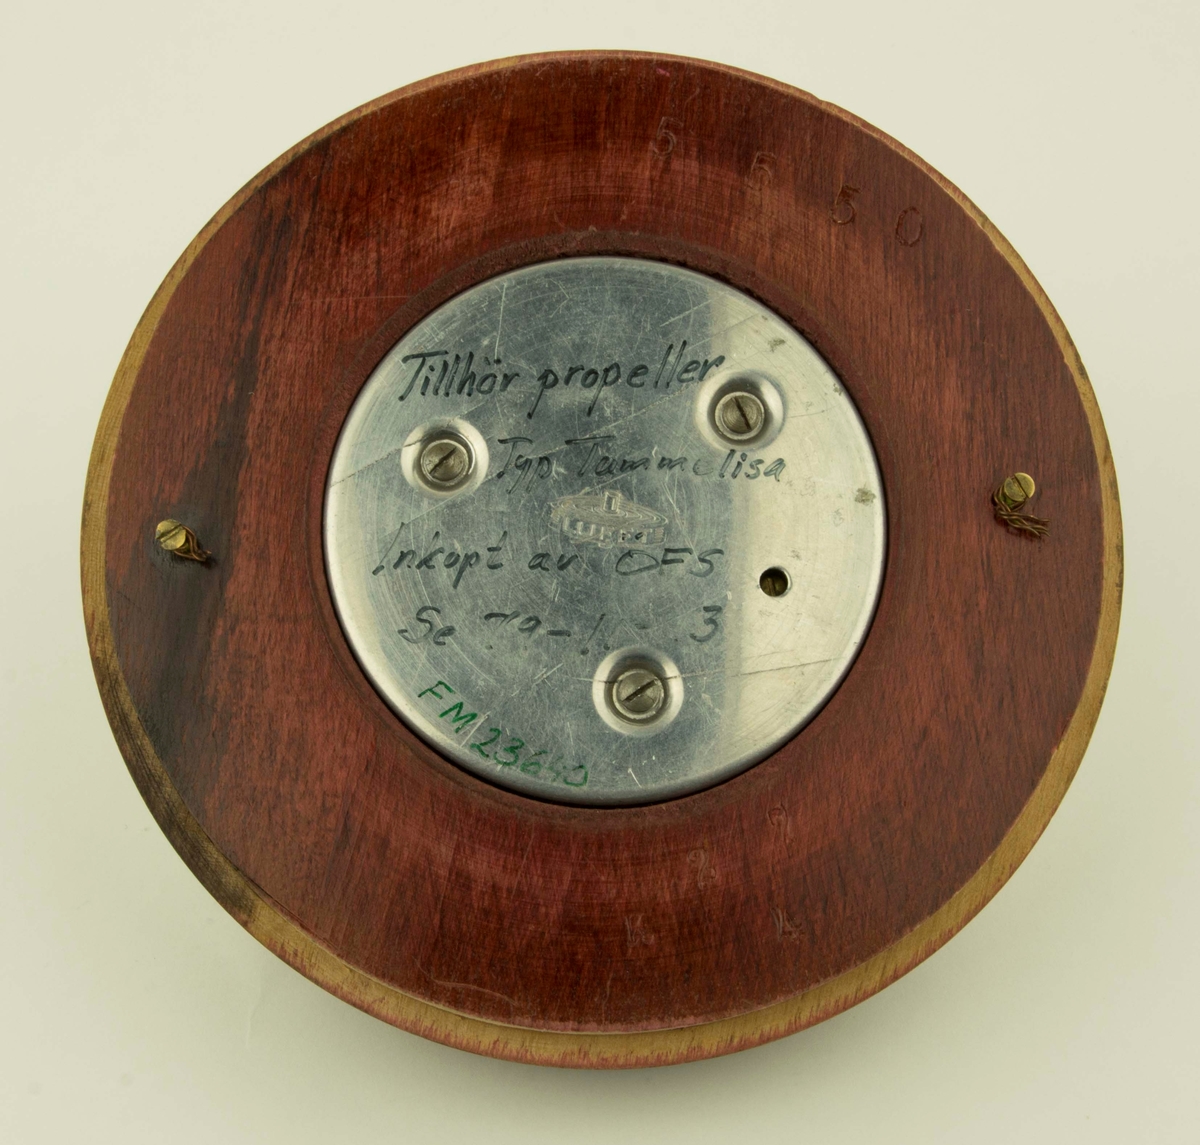 Barometer i mörkbrunt trä tillhörande propellertyp Tummelisa. Inköpt av Ö.F.S. LUFFT